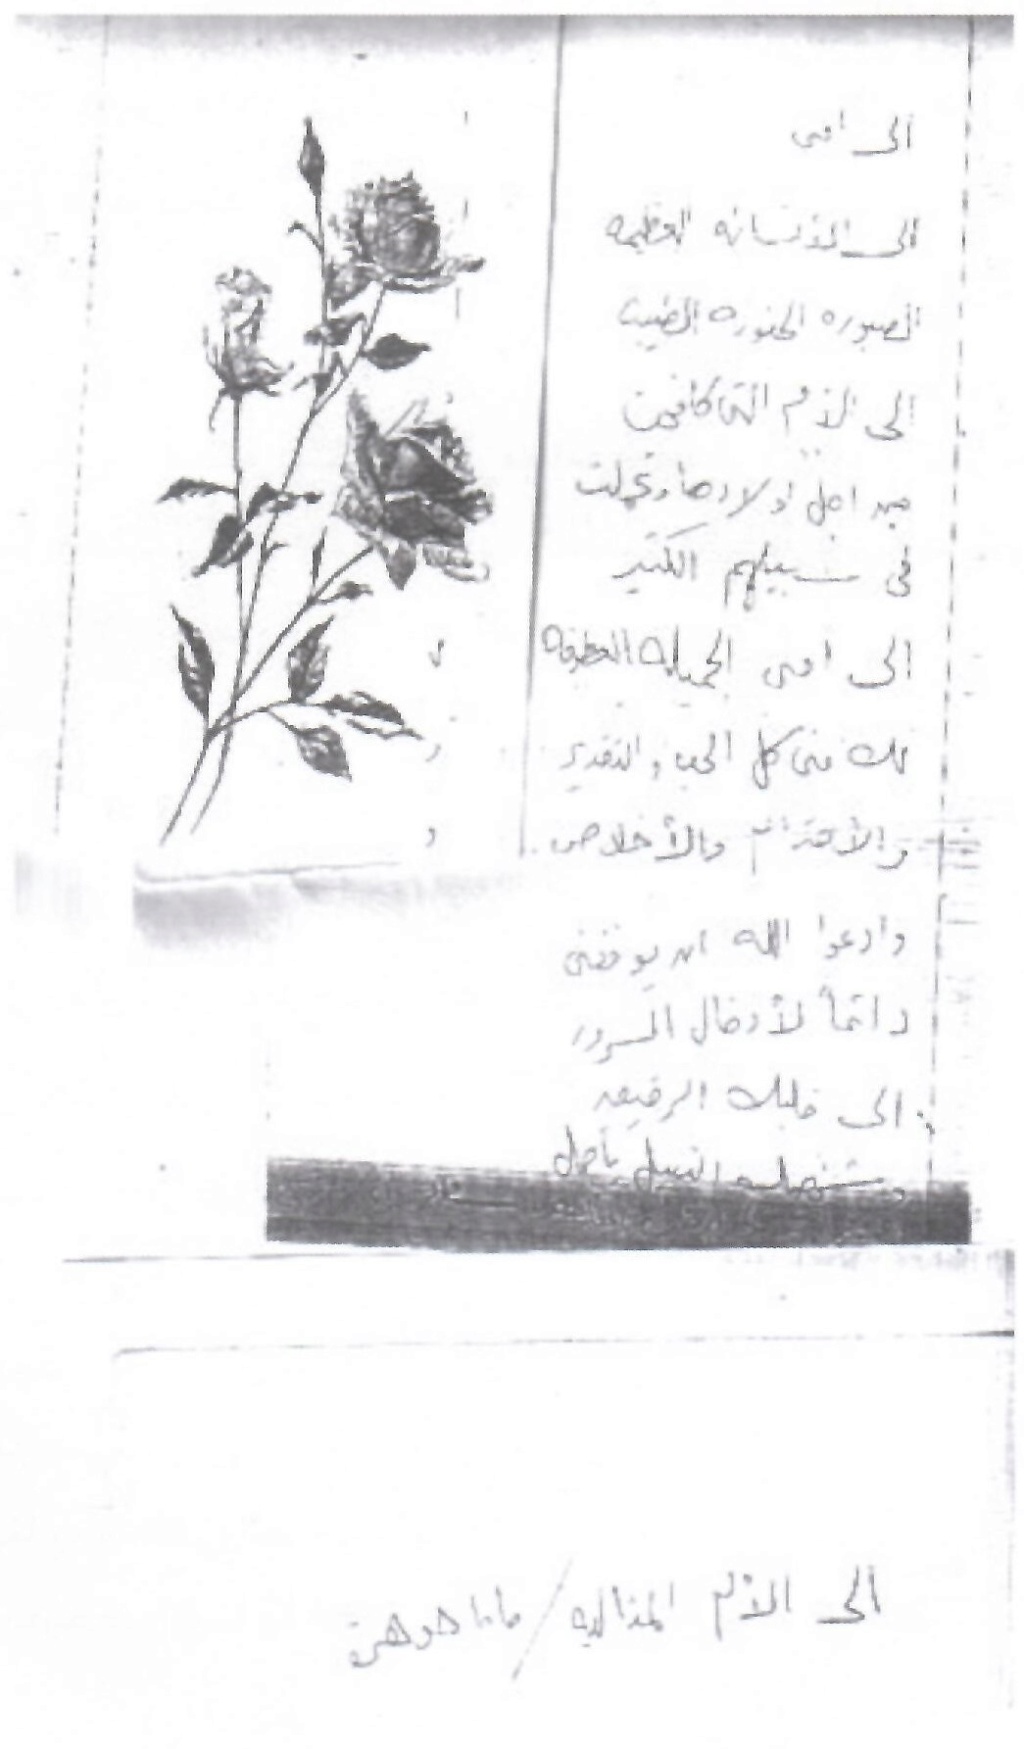 1976 - وثيقة مكتوبة : رسالة تقدير من سعاد حسني إلى أمها 1976 م 2408